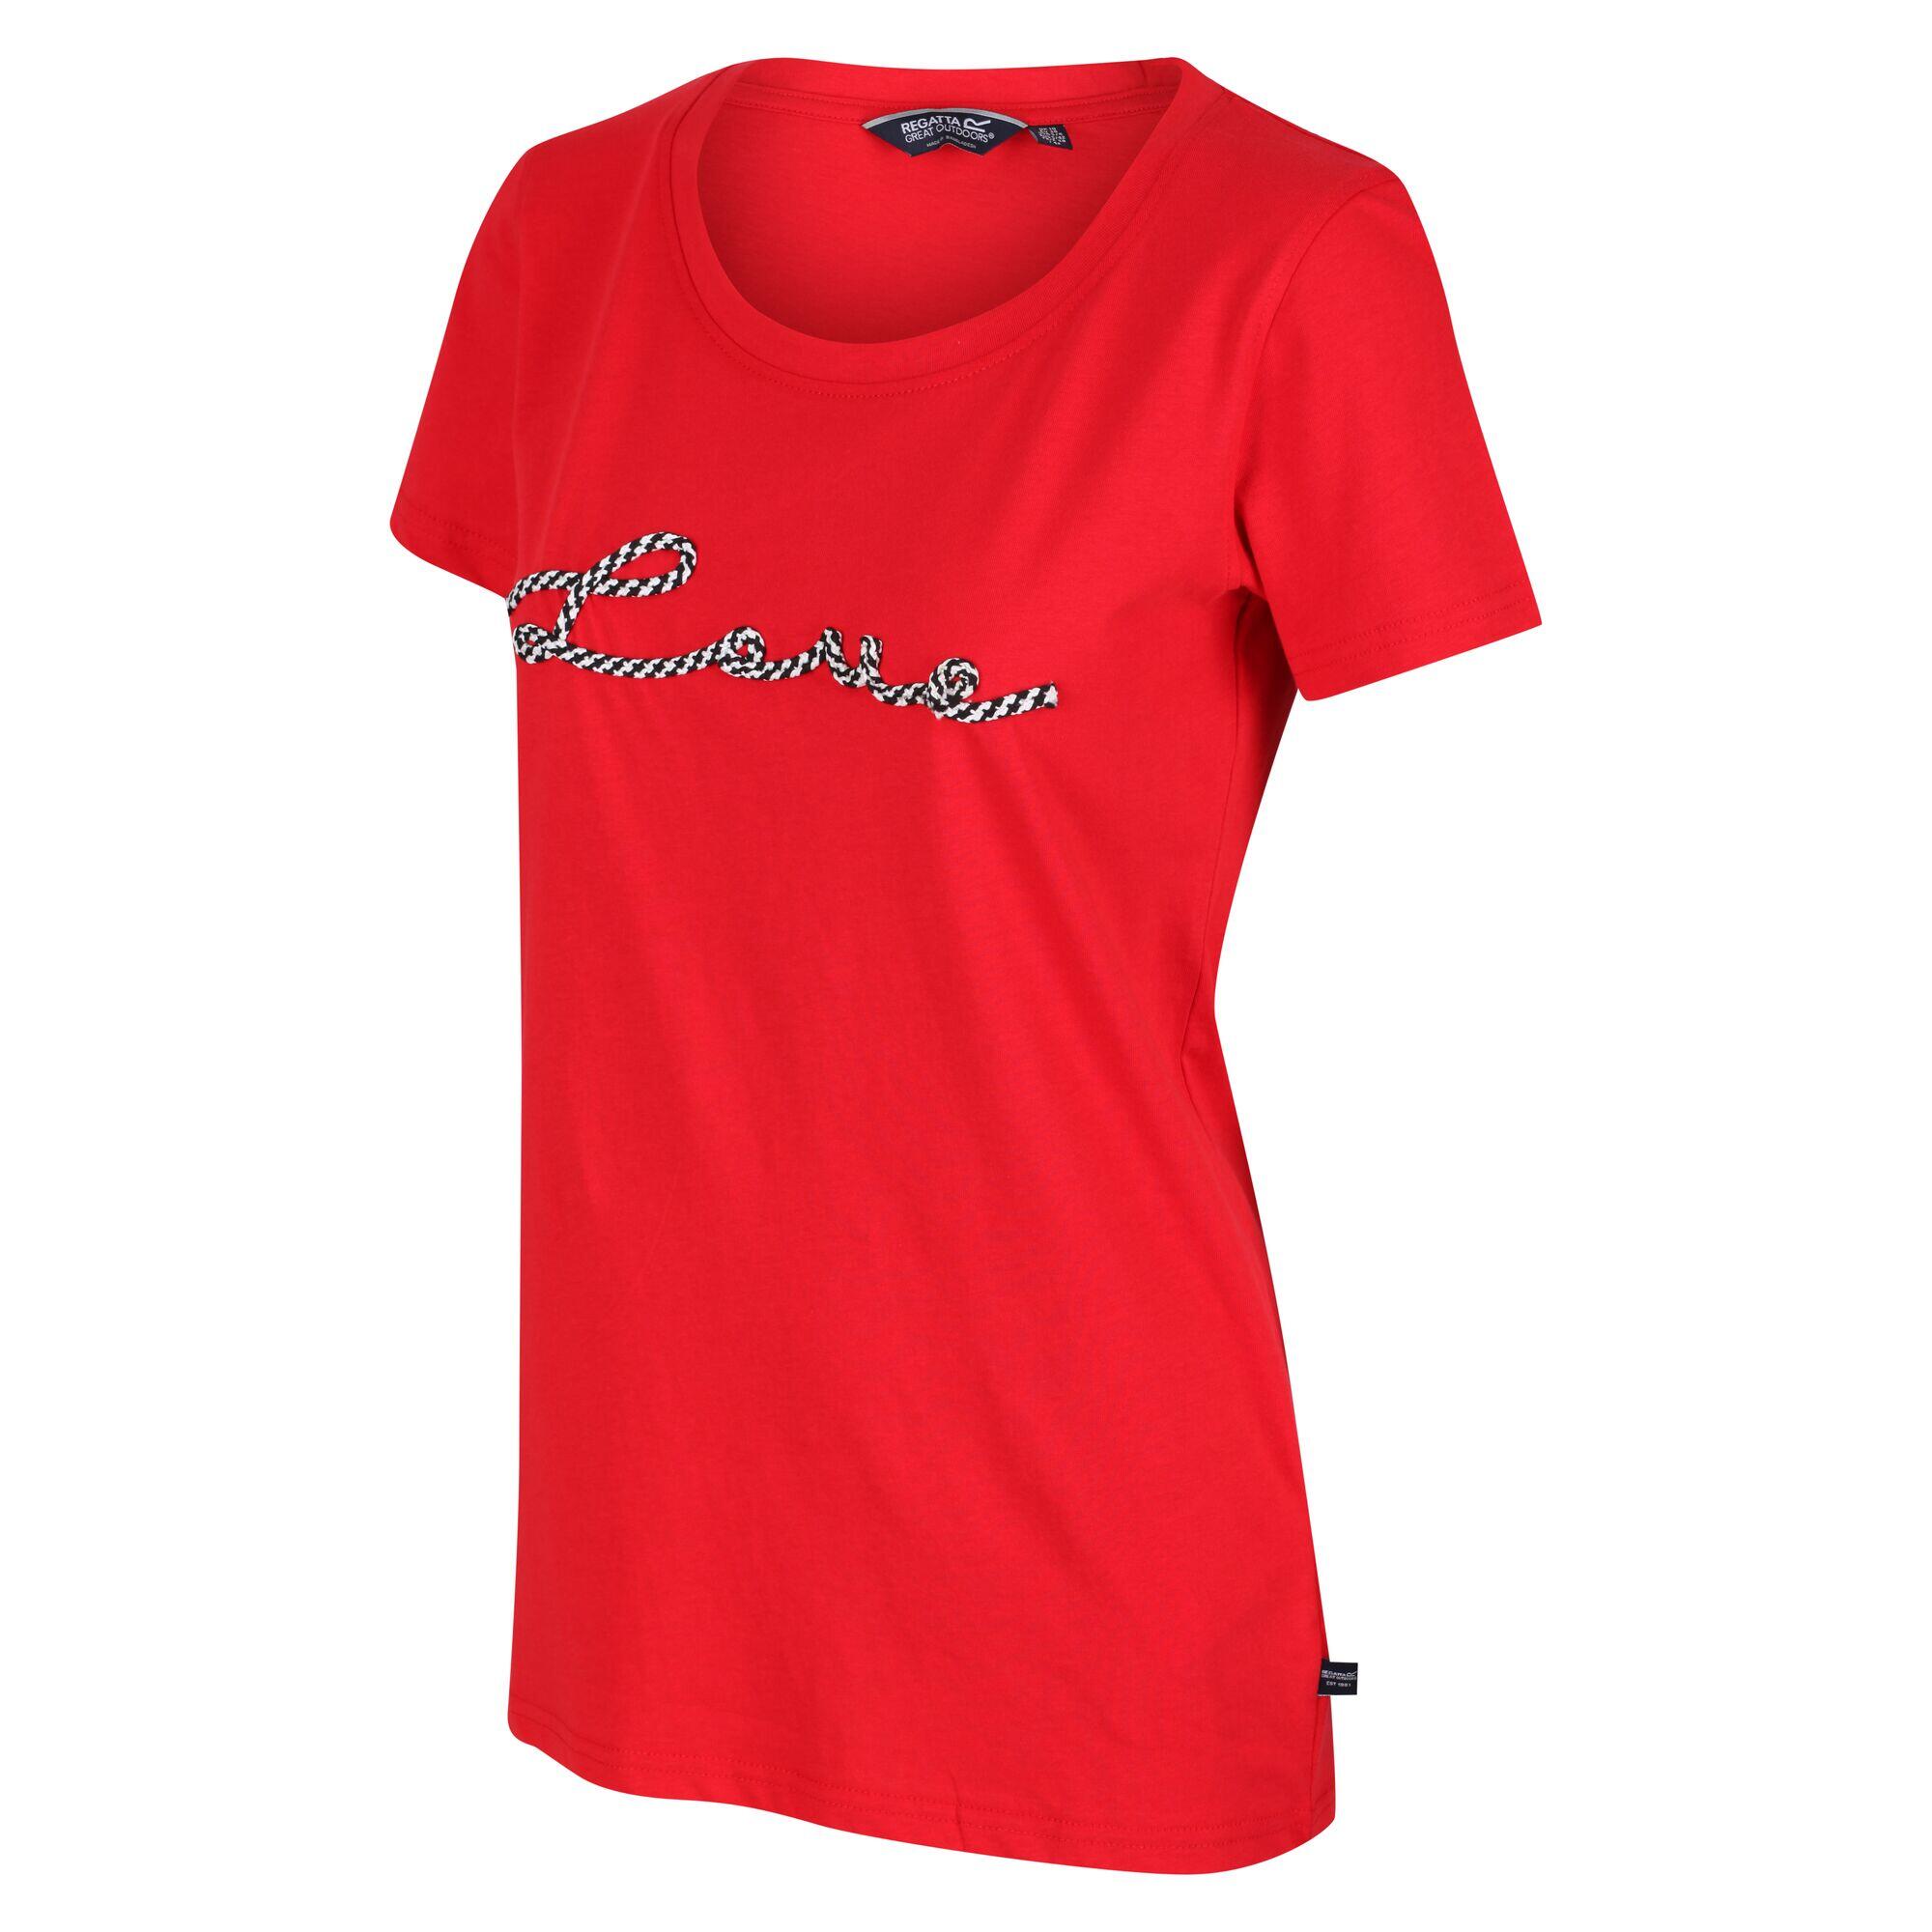 Filandra VI Women's Walking Short Sleeve T-Shirt - True Red 5/5